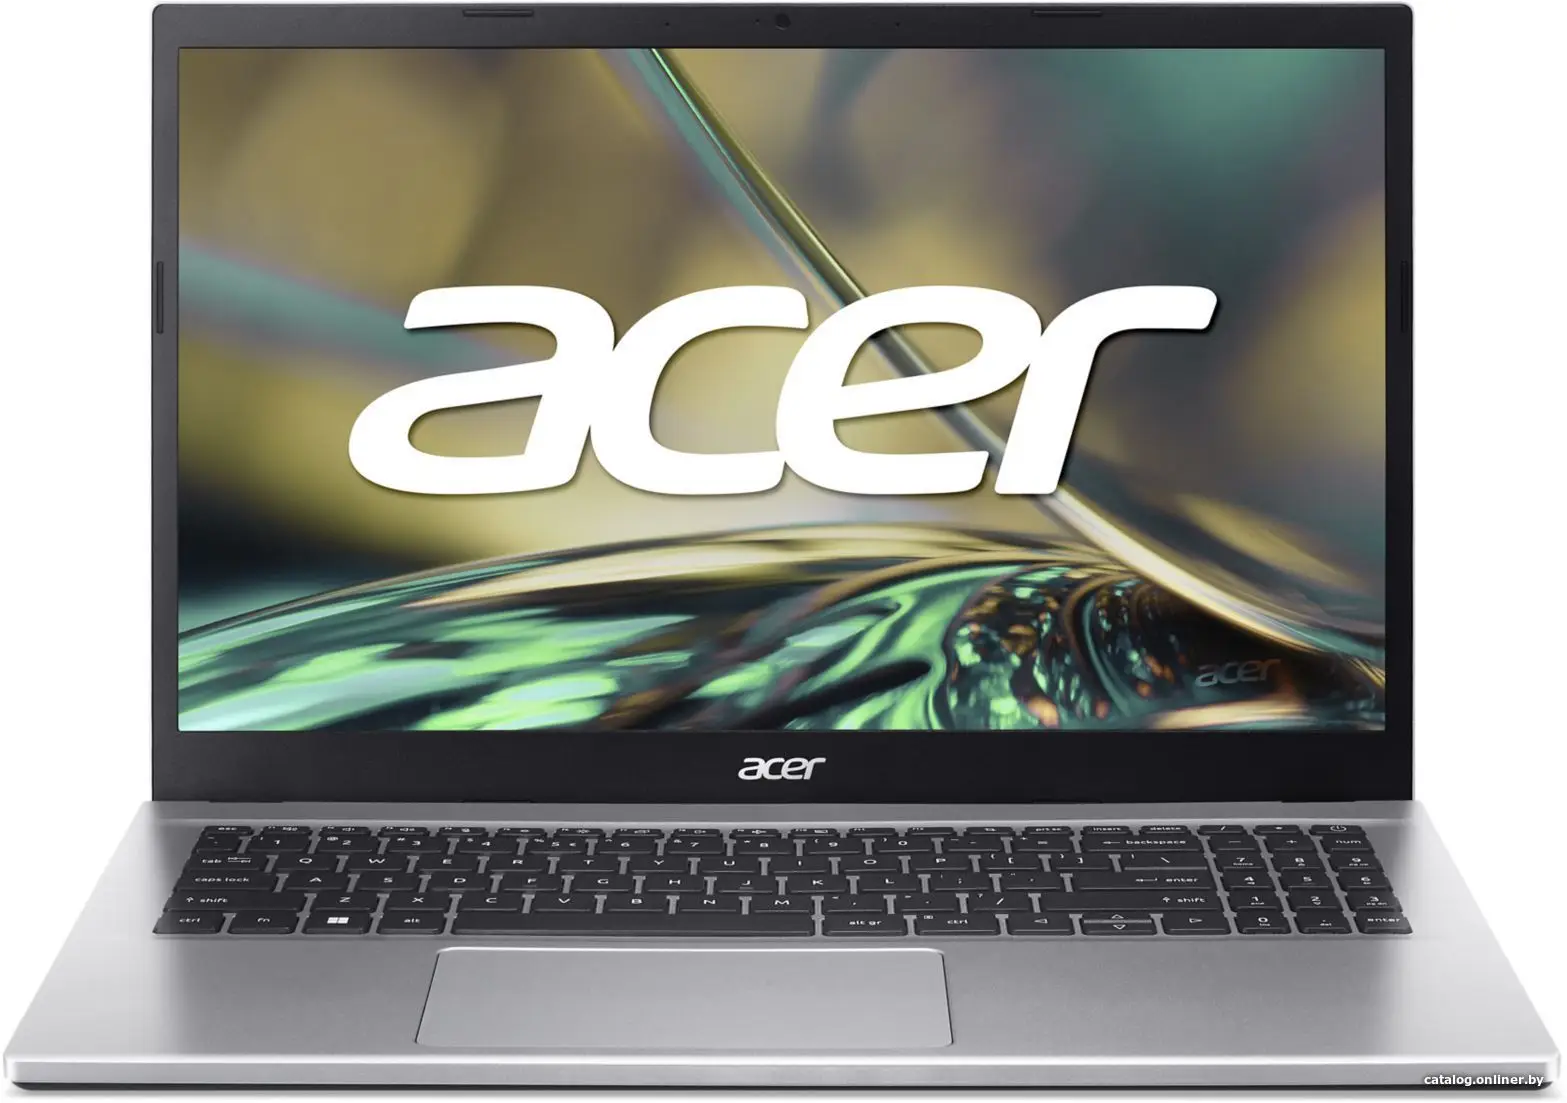 Купить Ноутбук Acer Aspire 3 A315-59-57H0 NX.K6TEL.009, цена, опт и розница